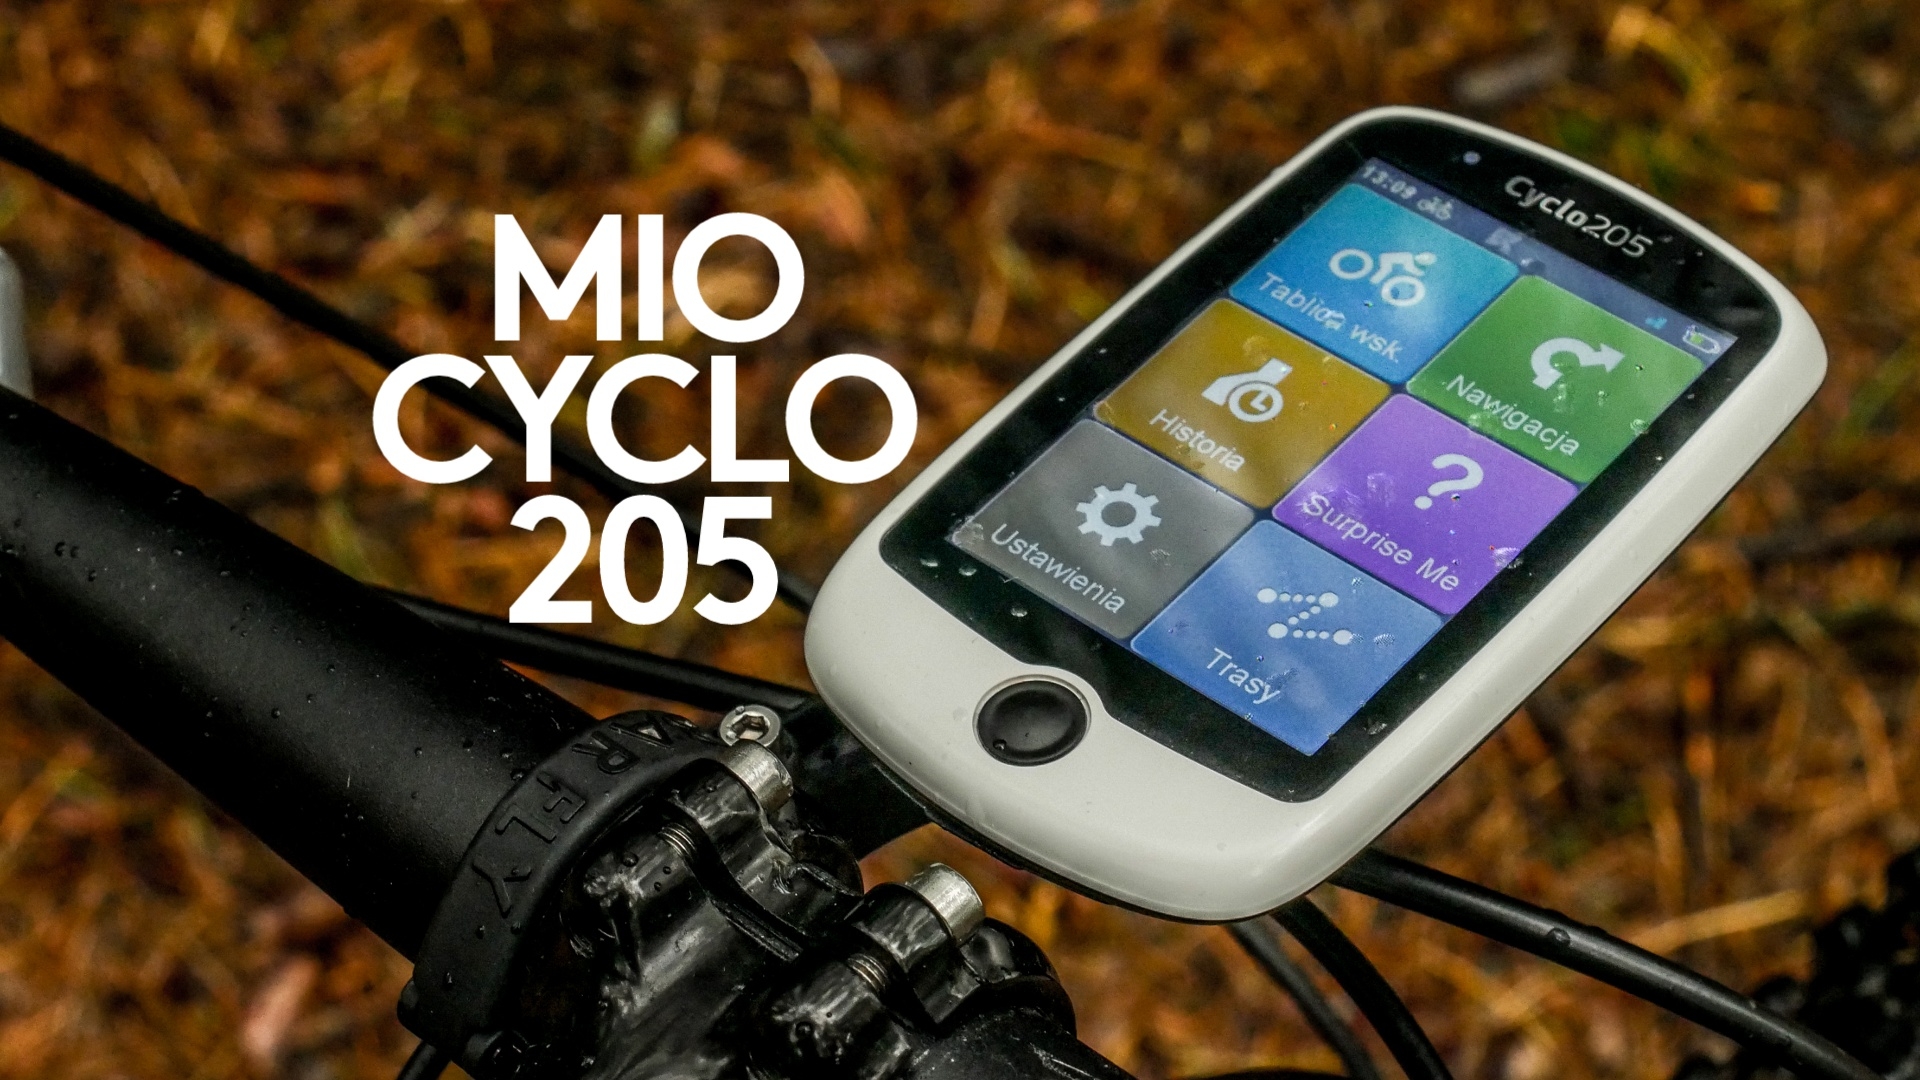 Mio Cyclo 205